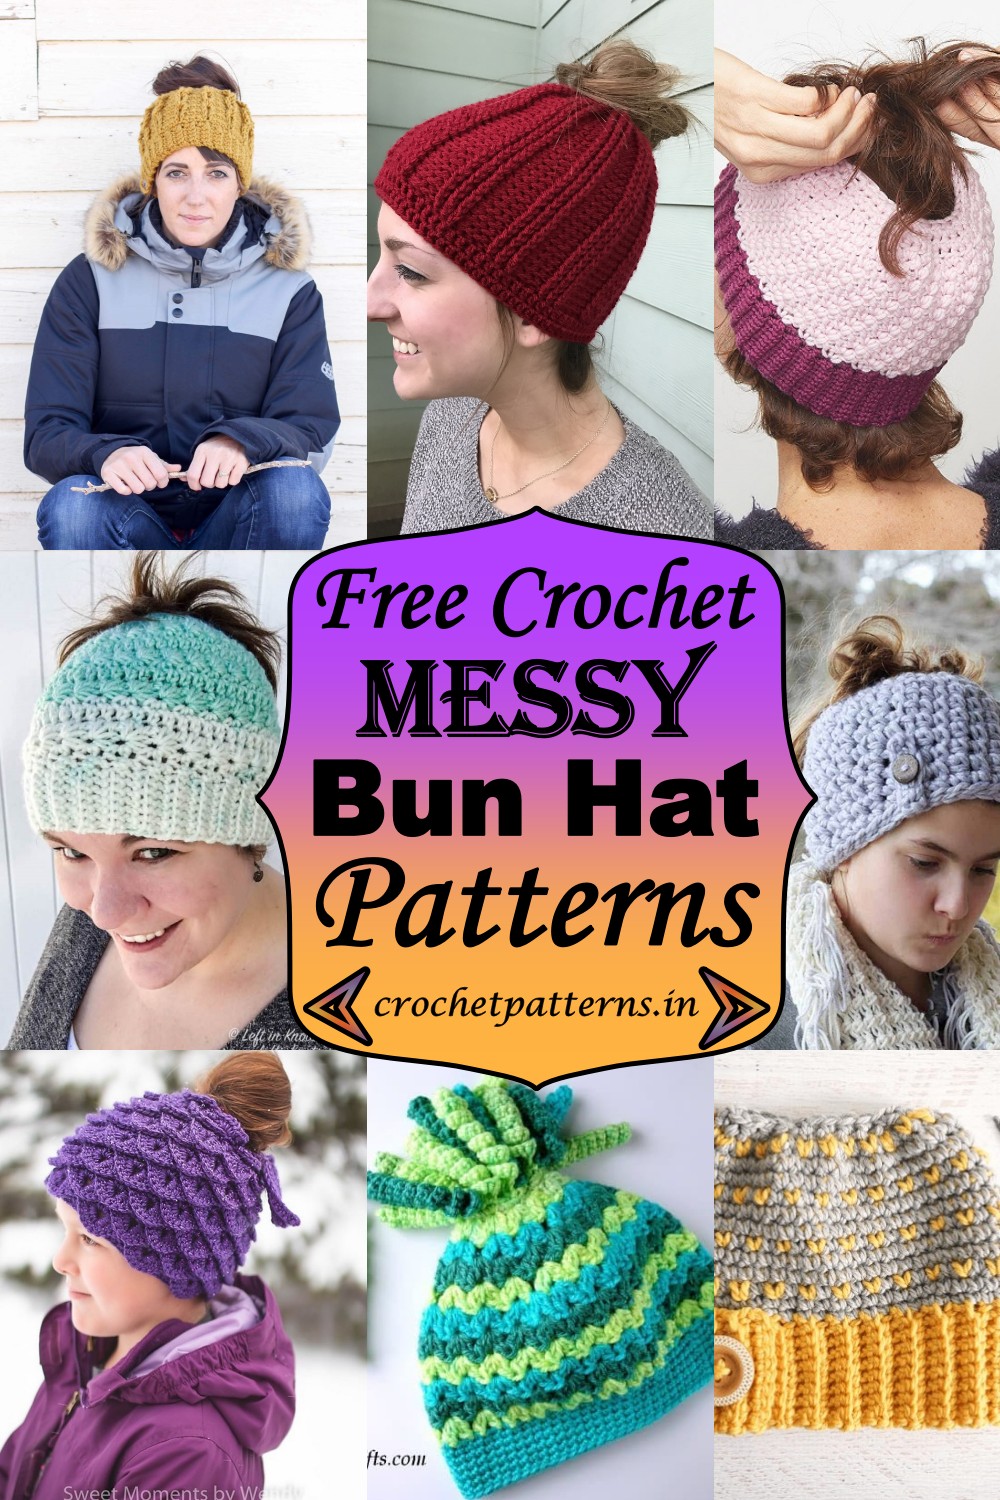 Free Crochet Messy Bun Hat Patterns